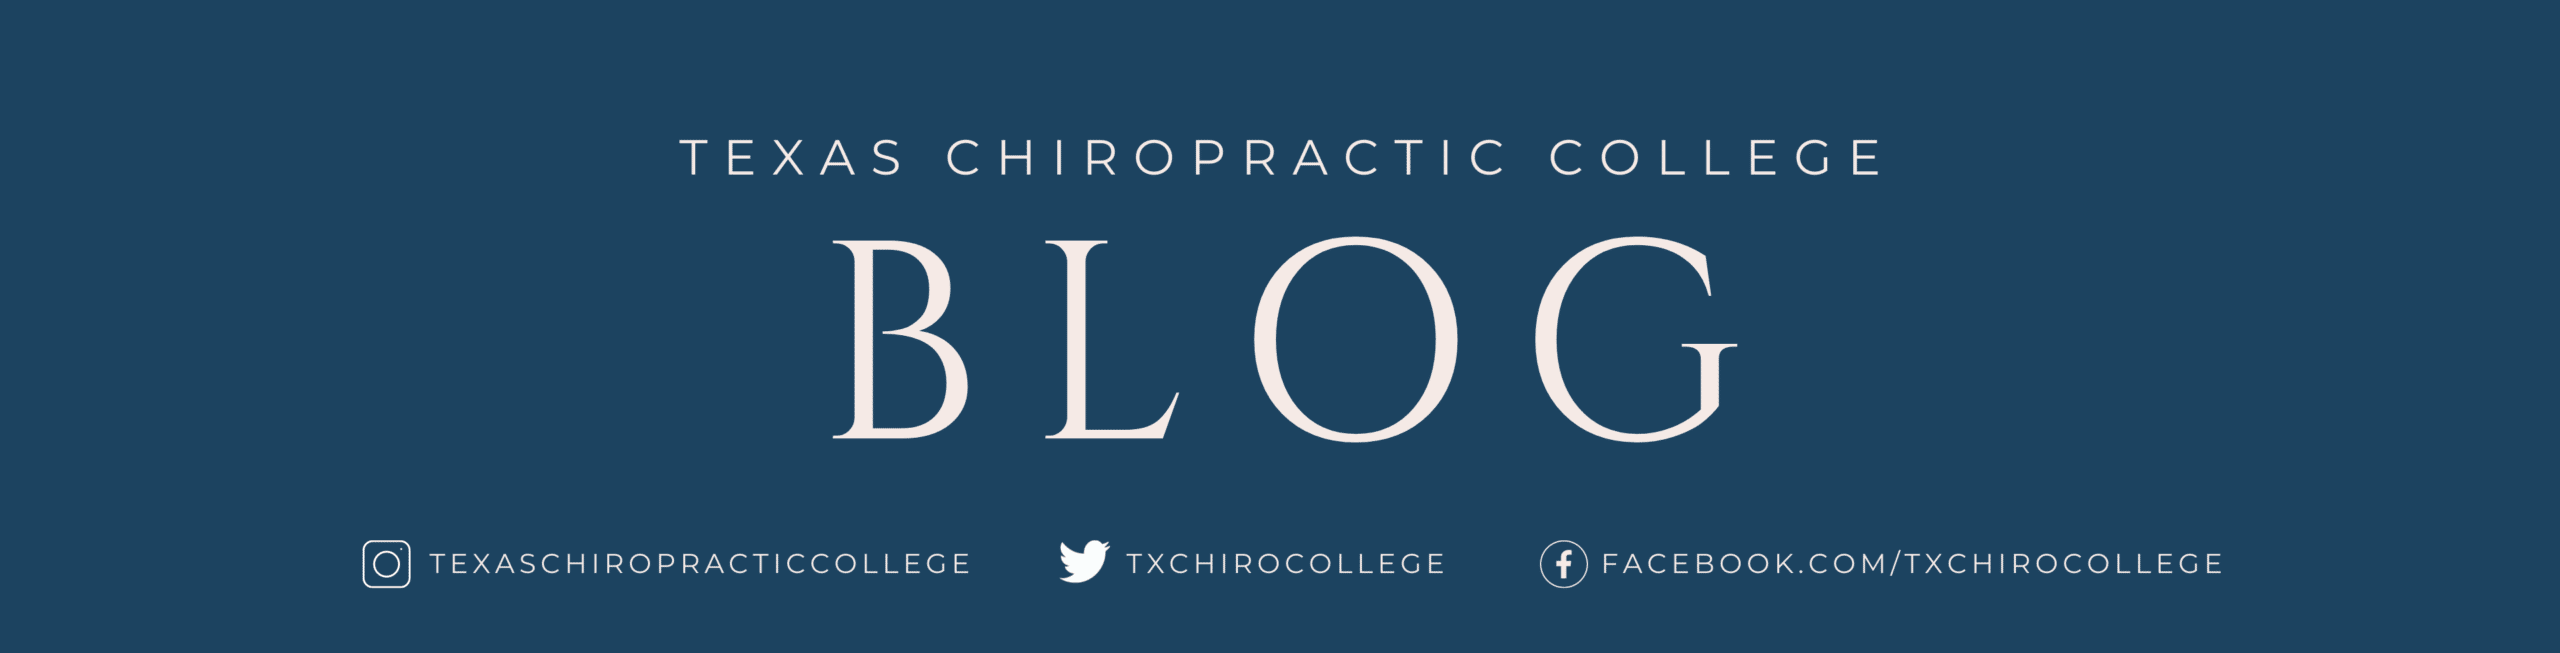 Blog Texas Chiropractic College